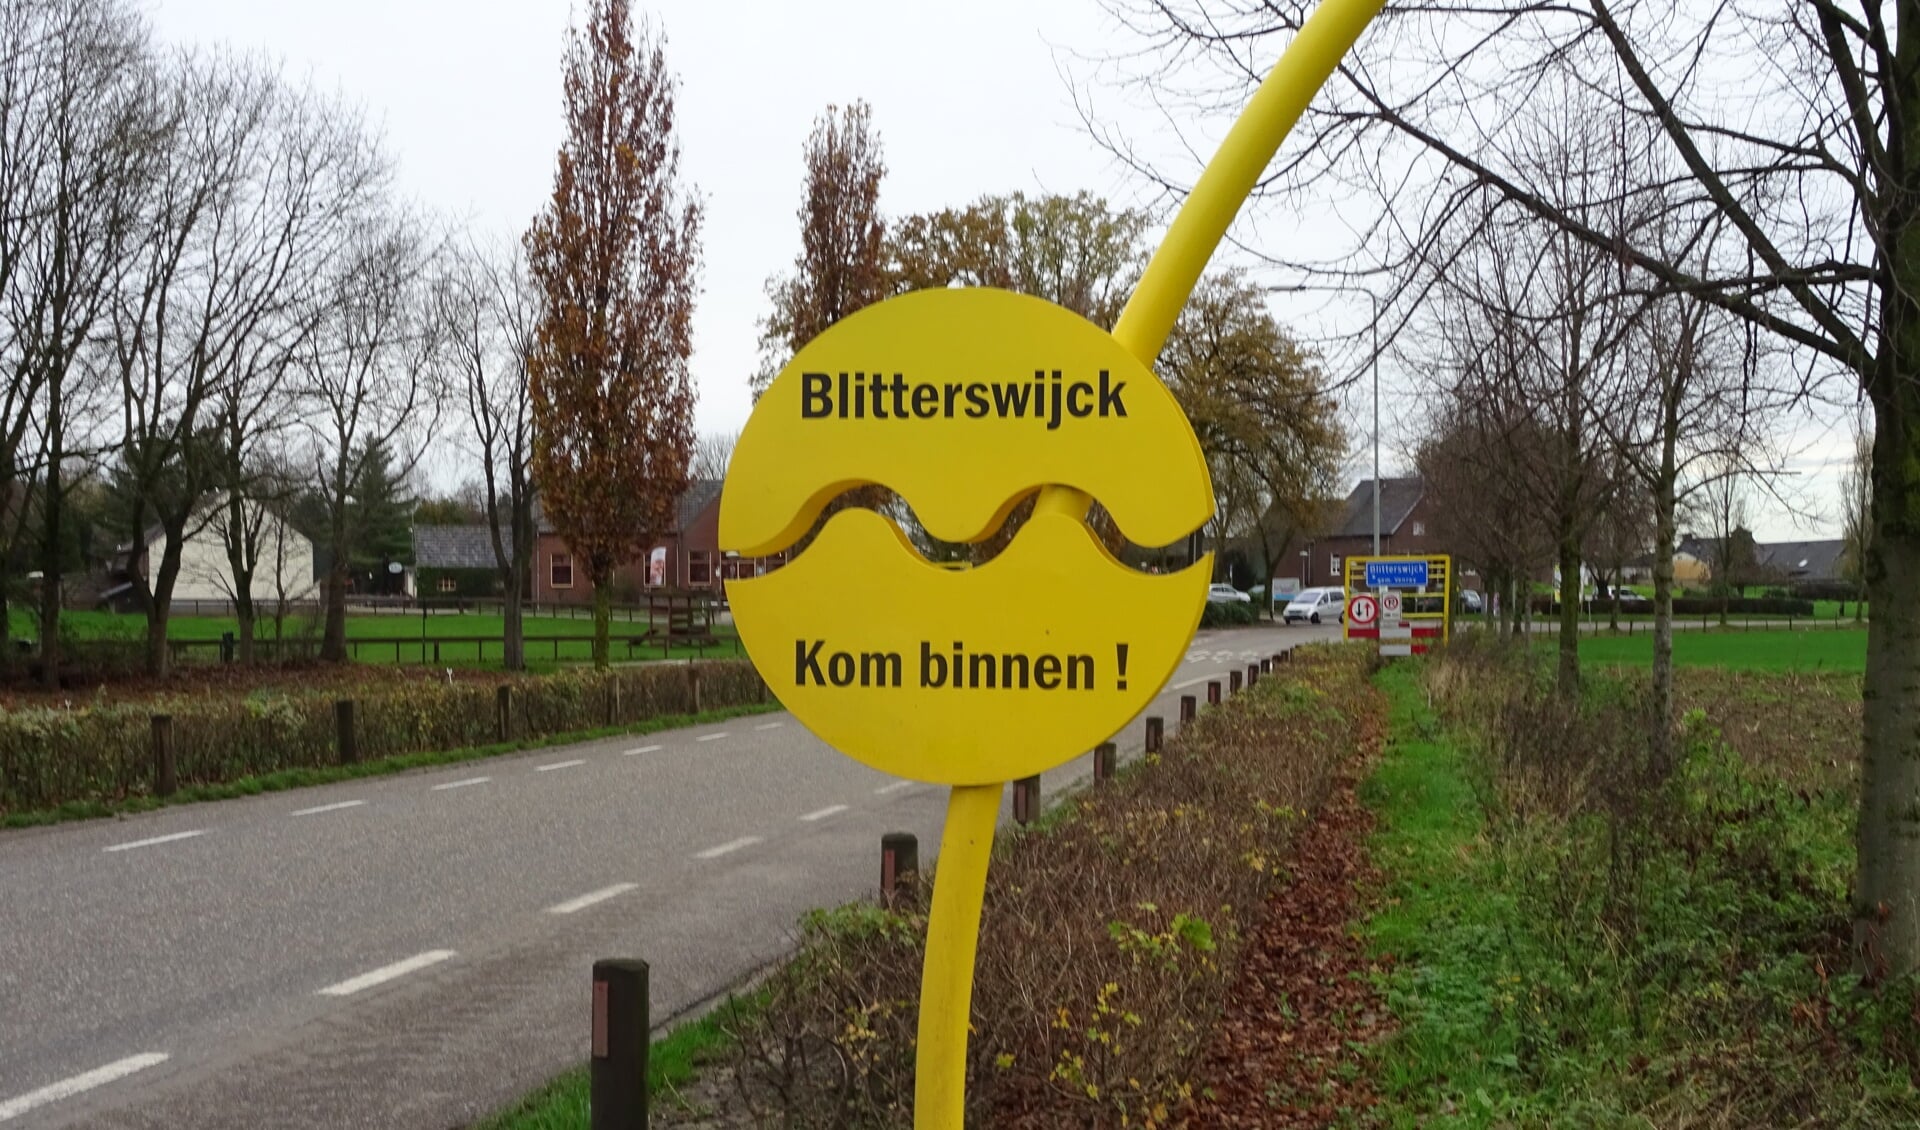 Blitterswijck zit sinds woensdagavond zonder dorpsraad. 